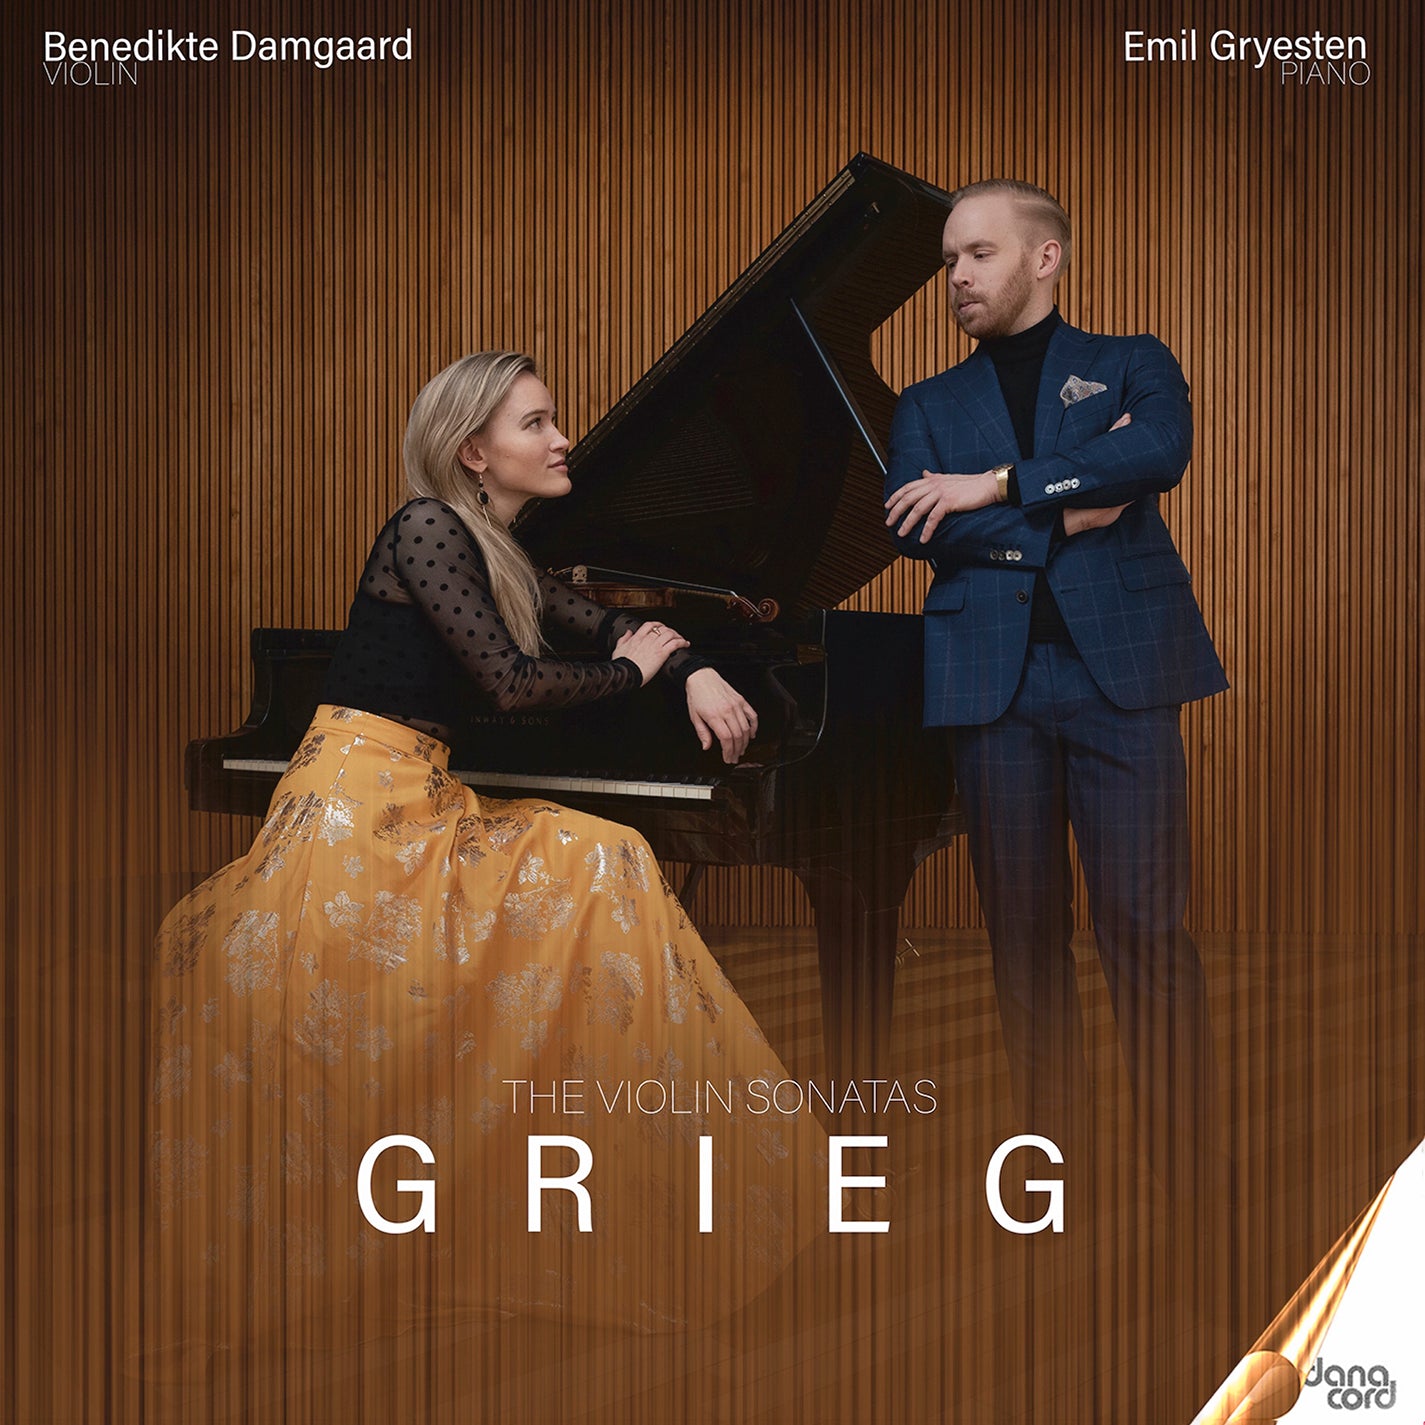 Grieg: The Violin Sonatas / Damgaard, Gryesten-Jensen